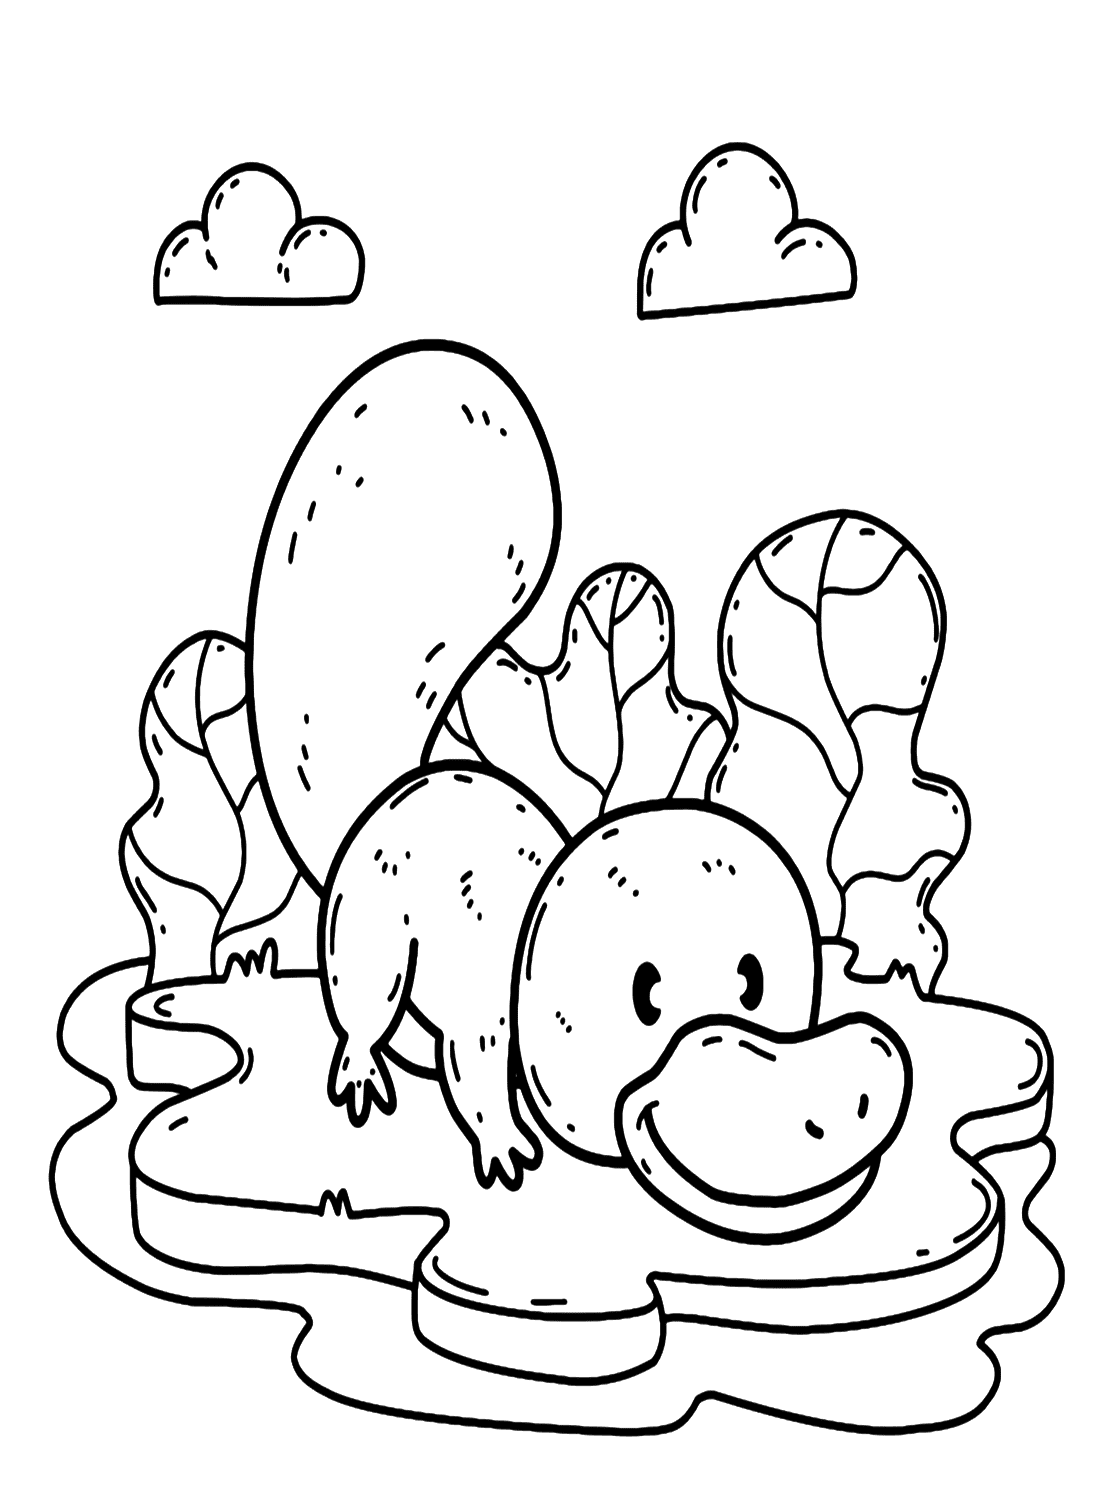 可爱的卡通鸭嘴兽 from Platypus